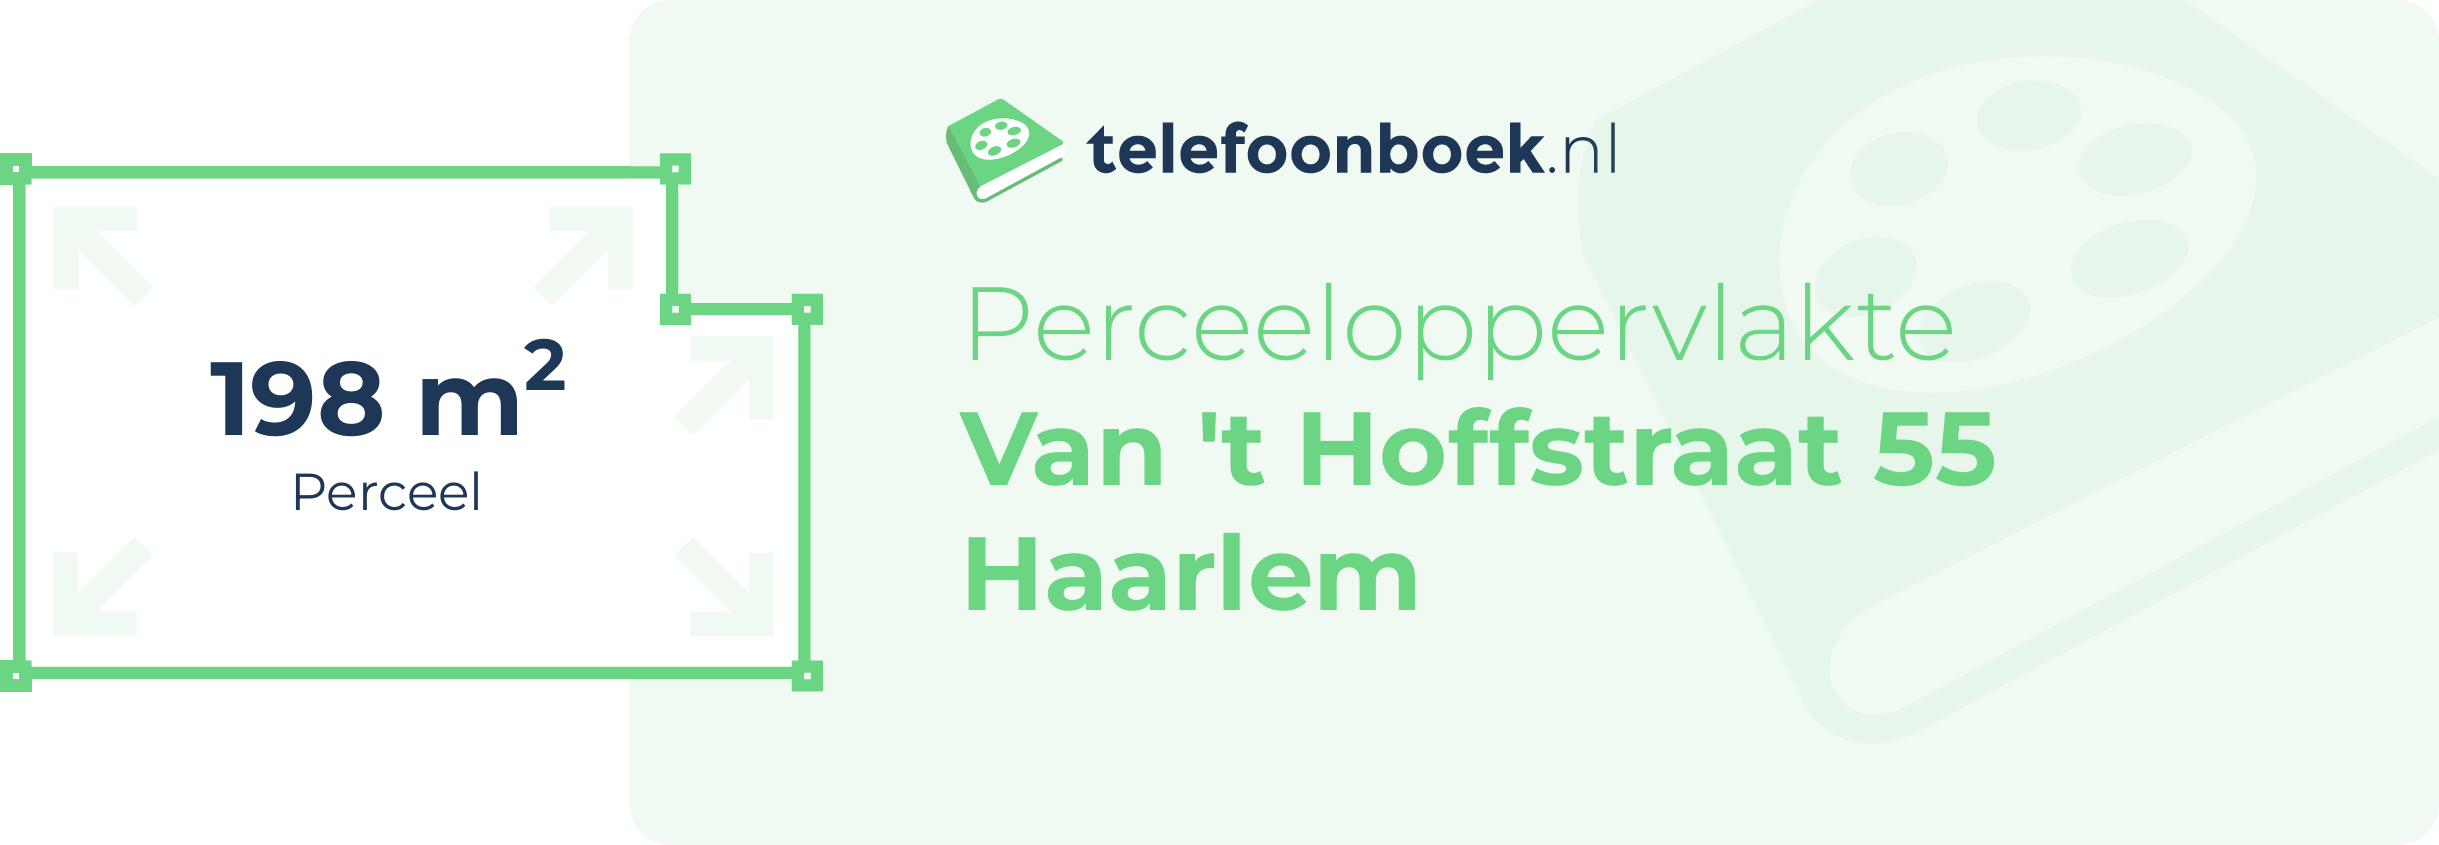 Perceeloppervlakte Van 't Hoffstraat 55 Haarlem